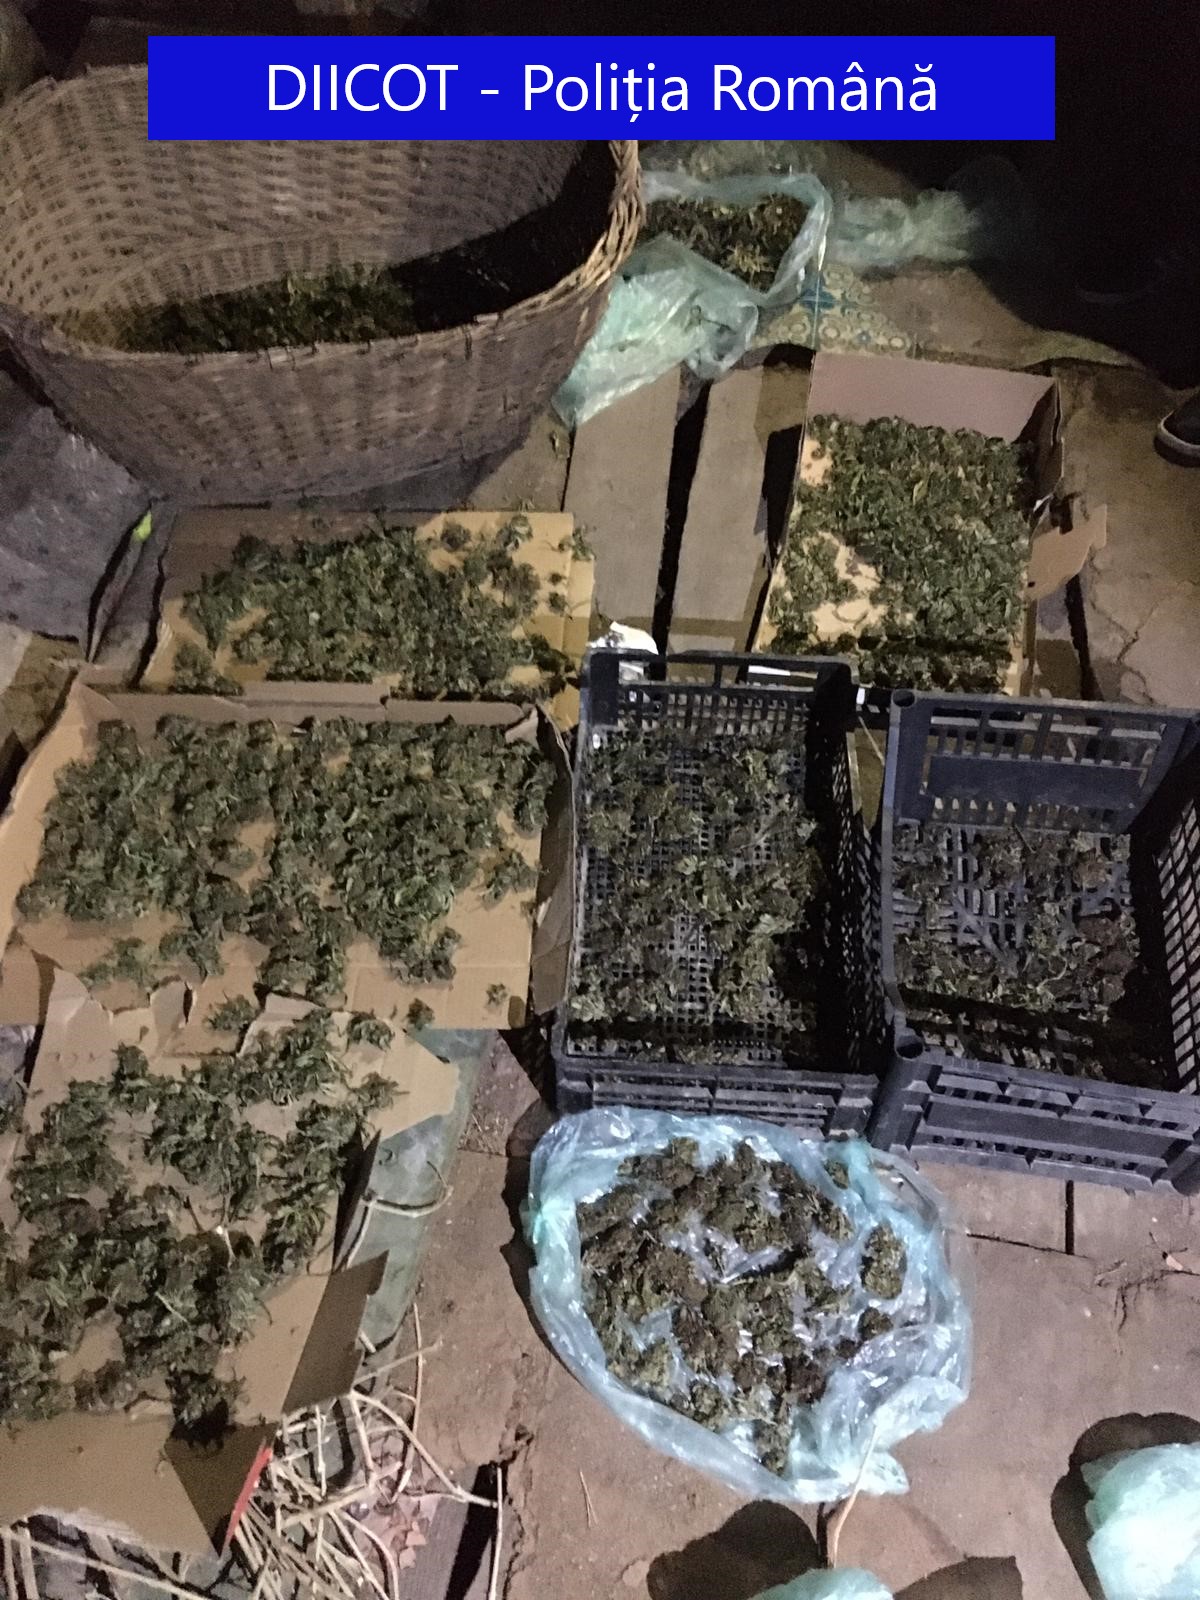 FOTO: Cannabis confiscat Beiuș 1.01.2020